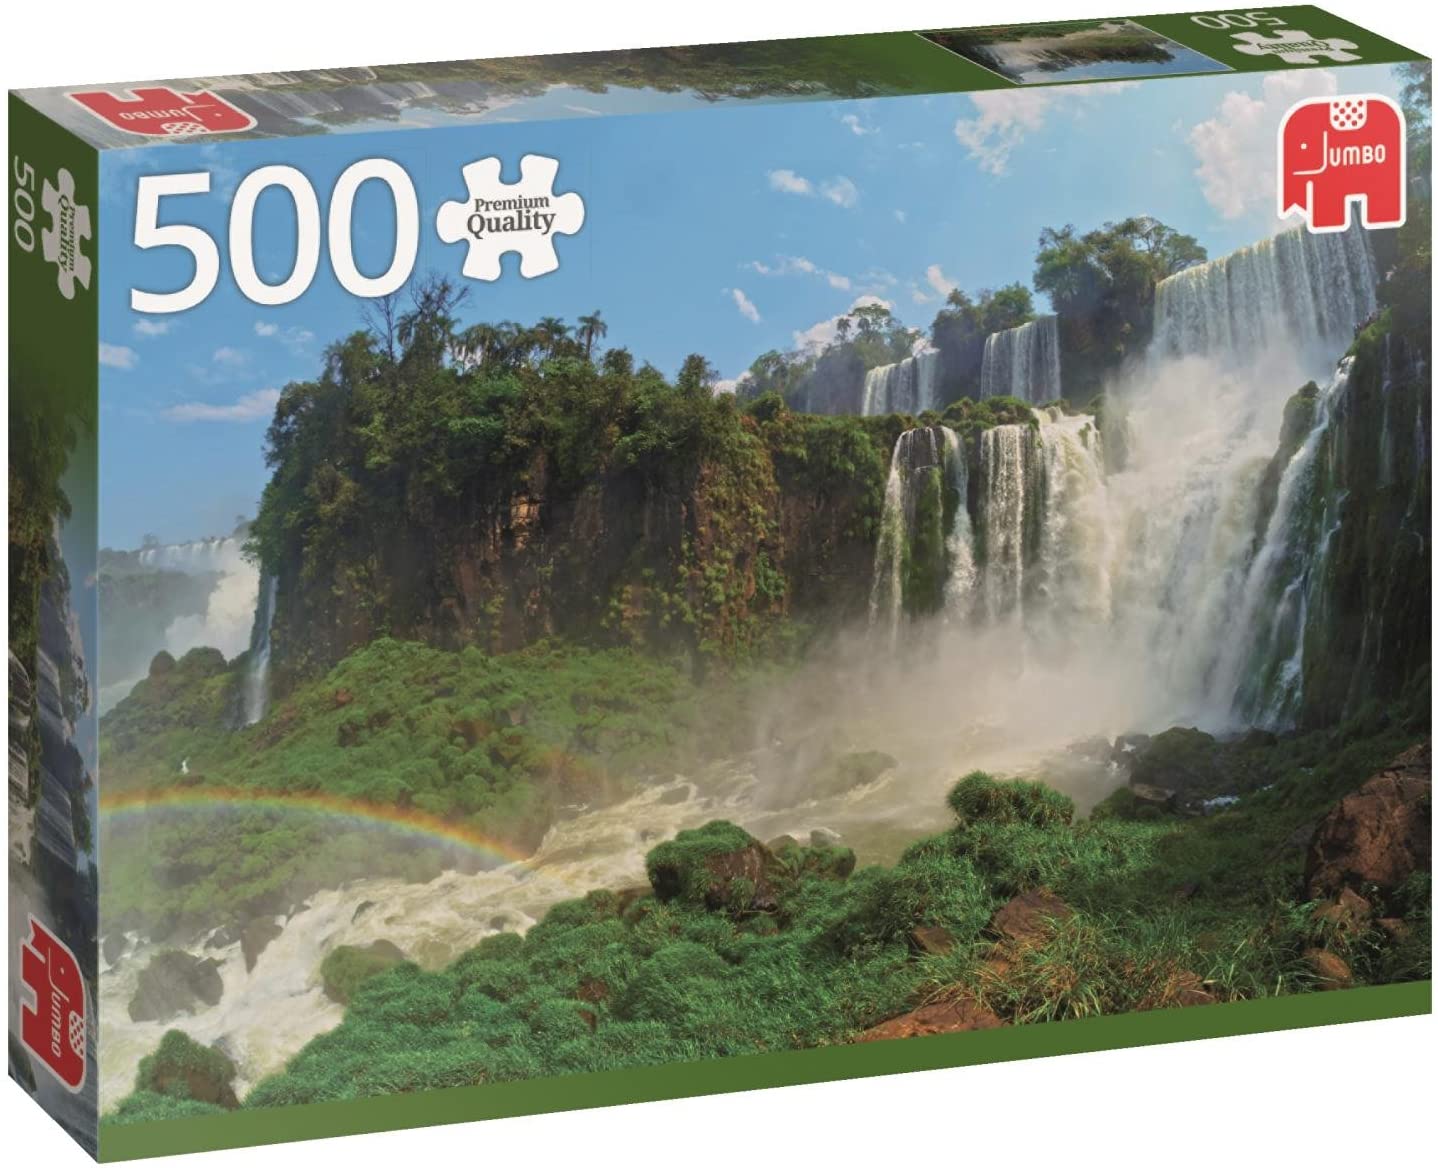 Puzzle Iguazu Wasserfälle - Argentienien - 500 Teile